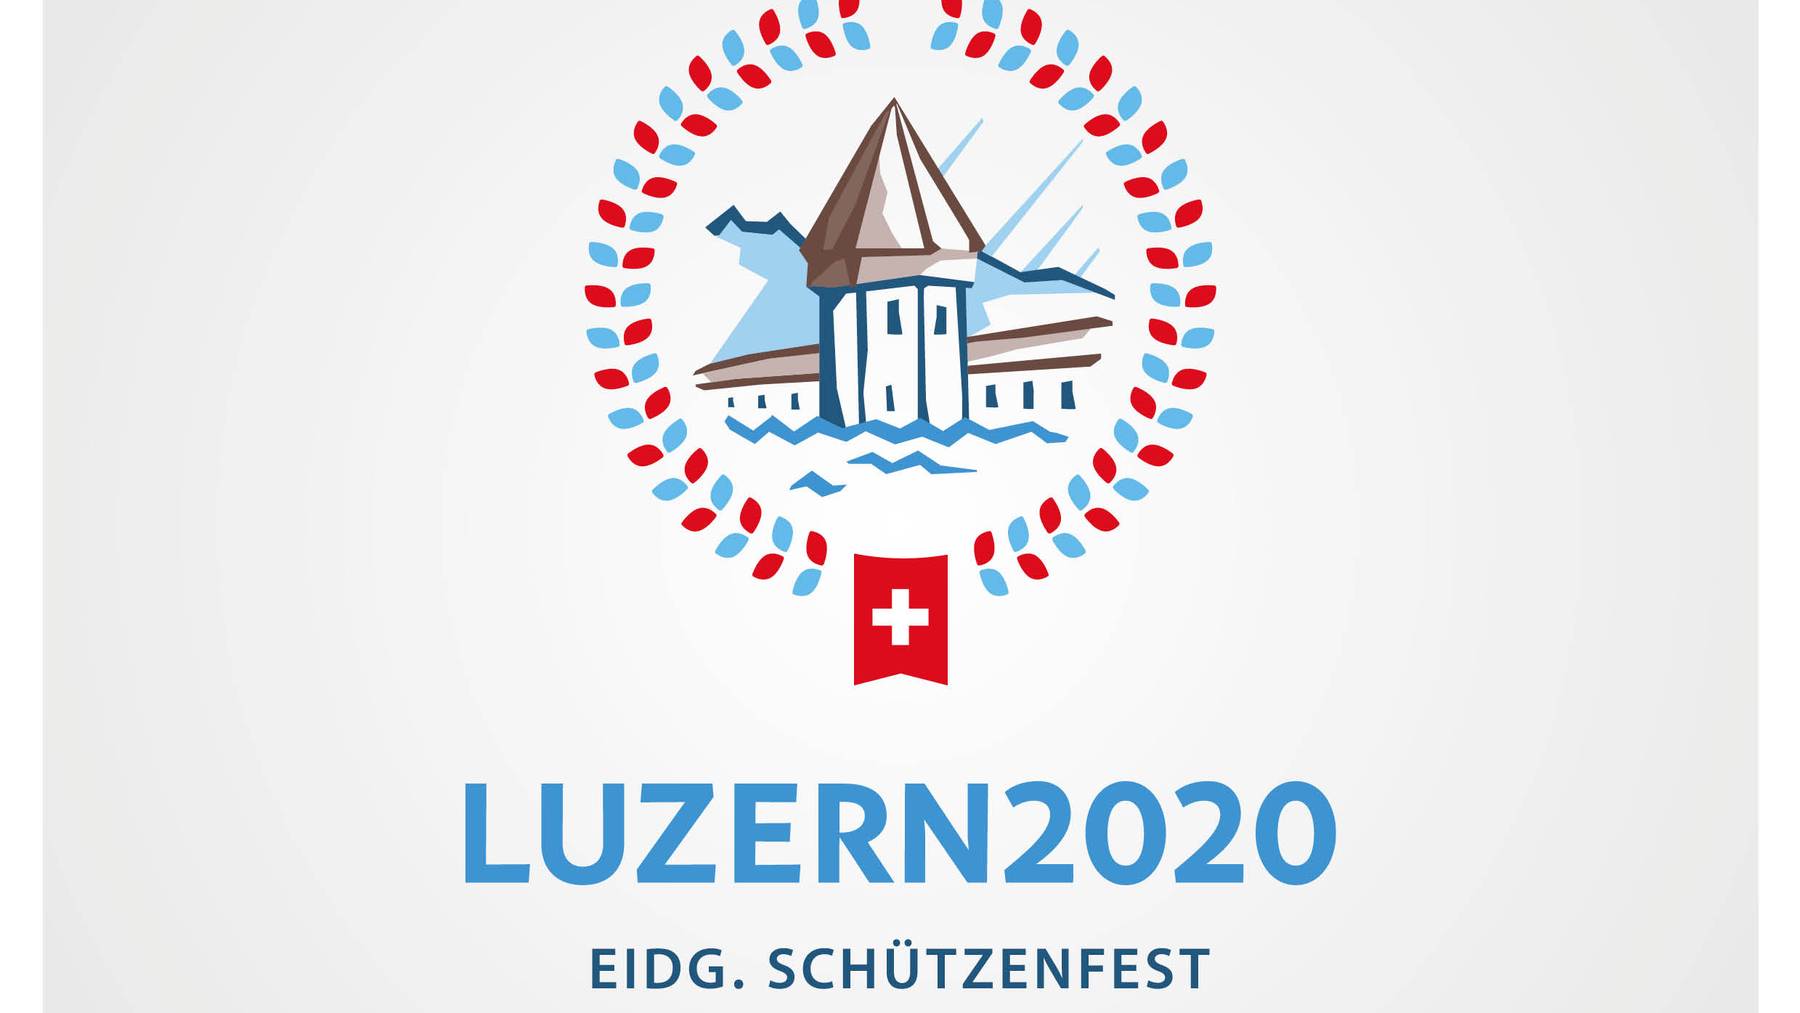 Das eidgenössische Schützenfest 2020 in Luzern wird um ein Jahr verschoben.